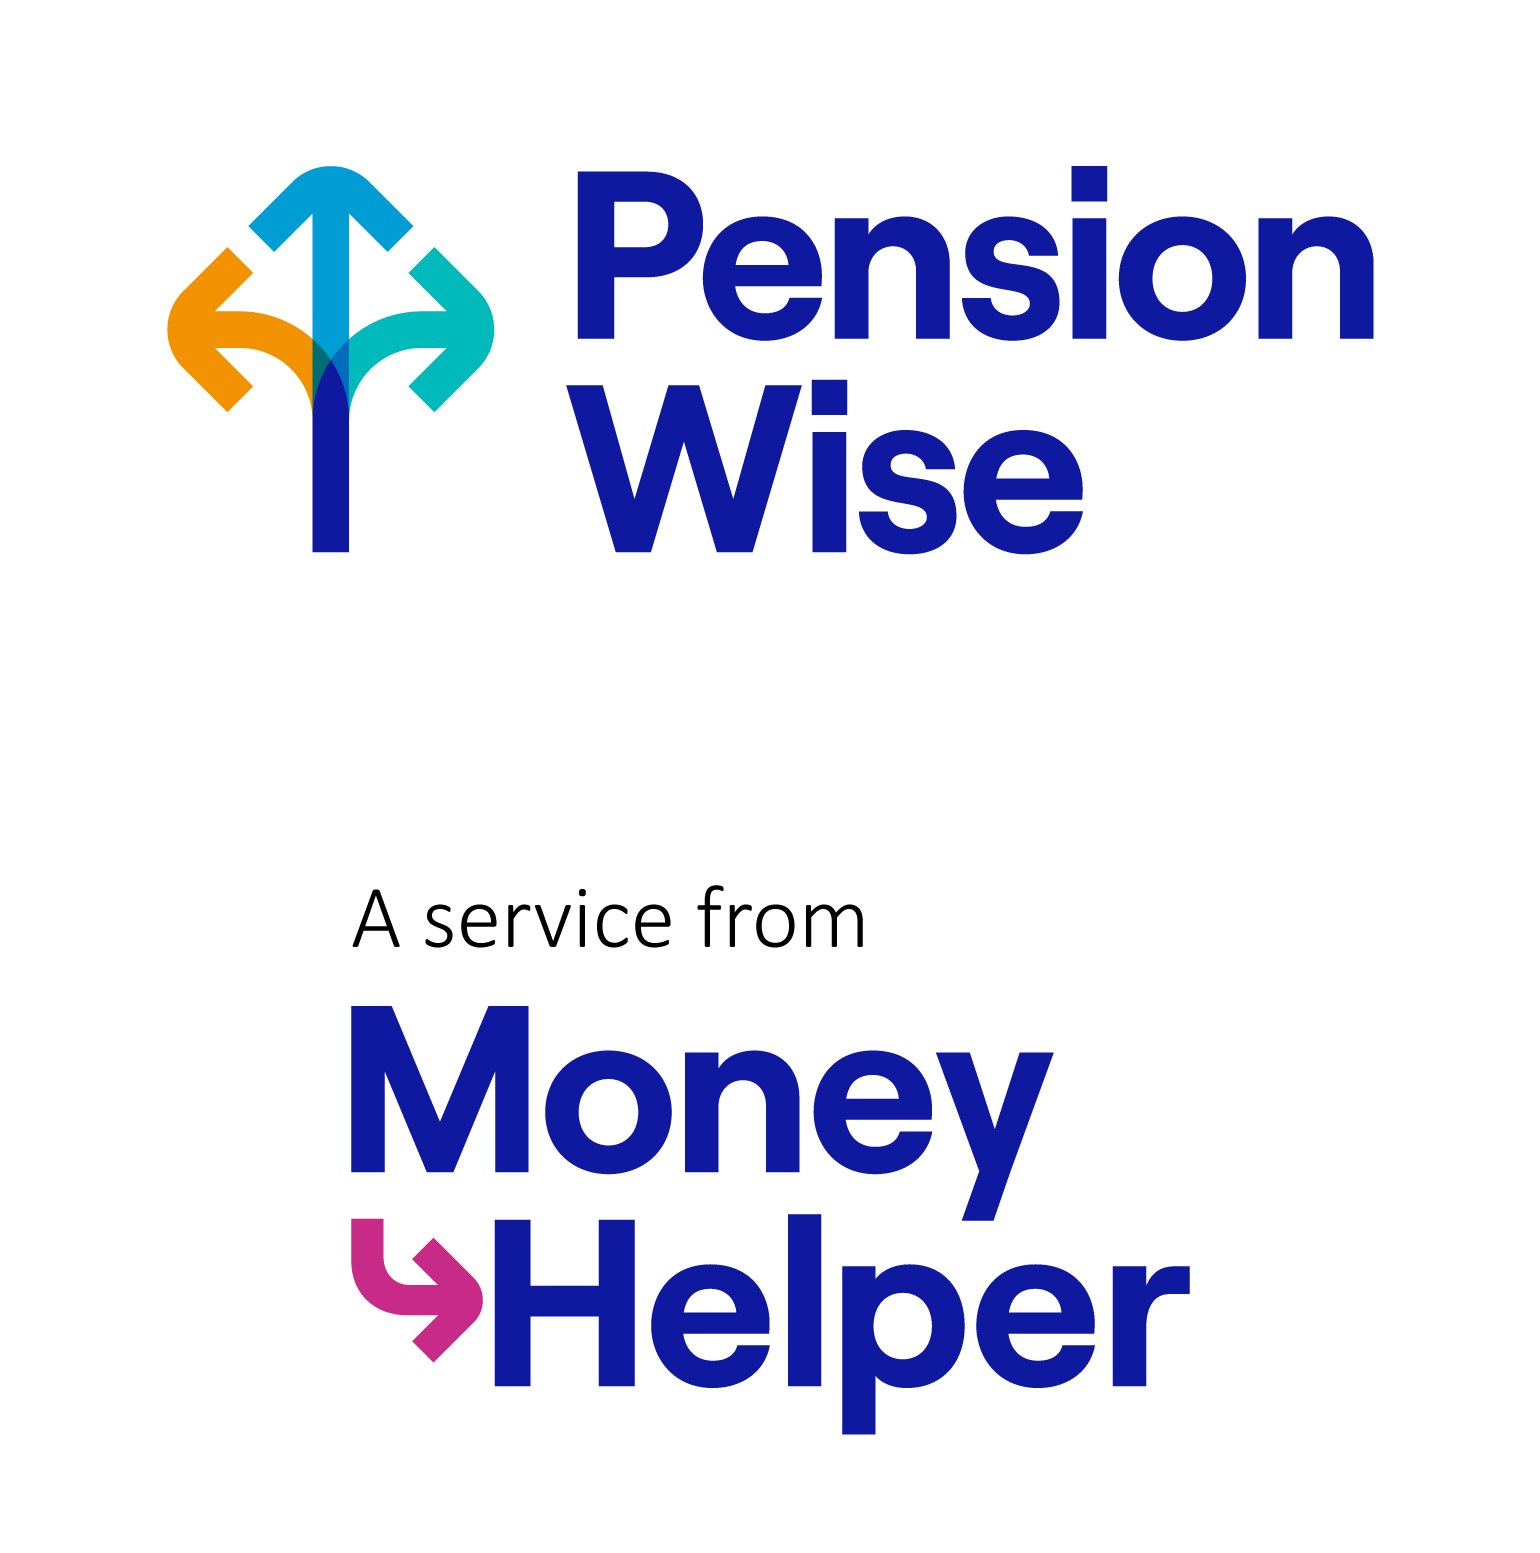 Pension wise logo